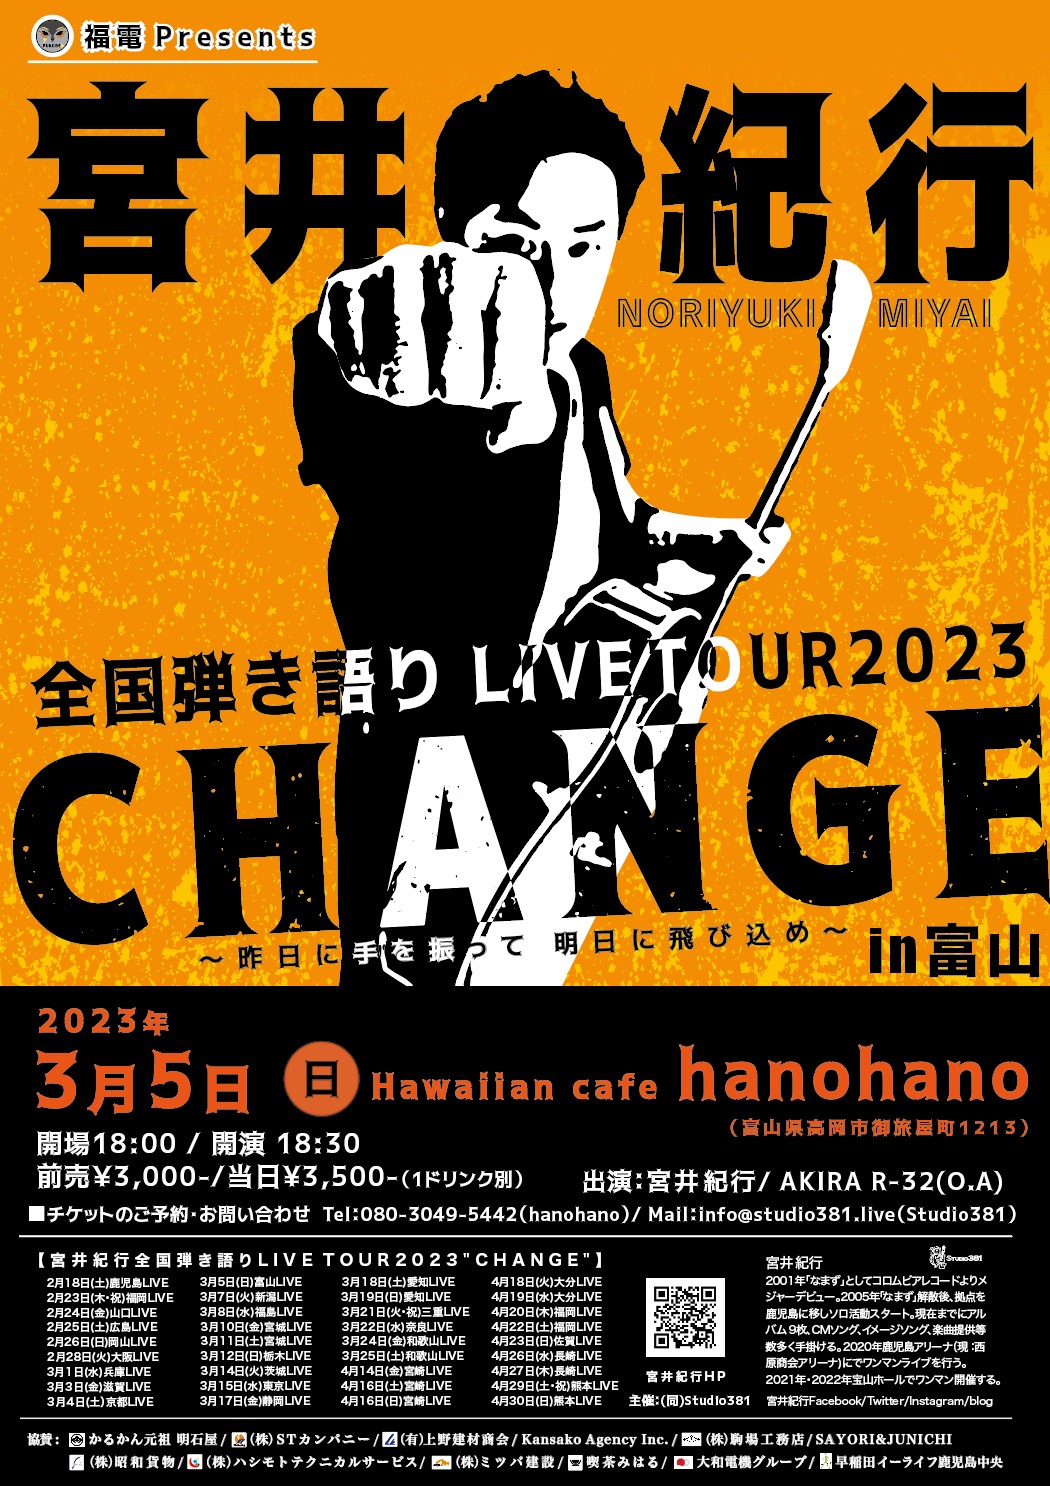 宮井紀行全国弾き語りLIVE TOUR2023”CHANGE”
〜昨日に手を振って 明日に飛び込め〜富山LIVE